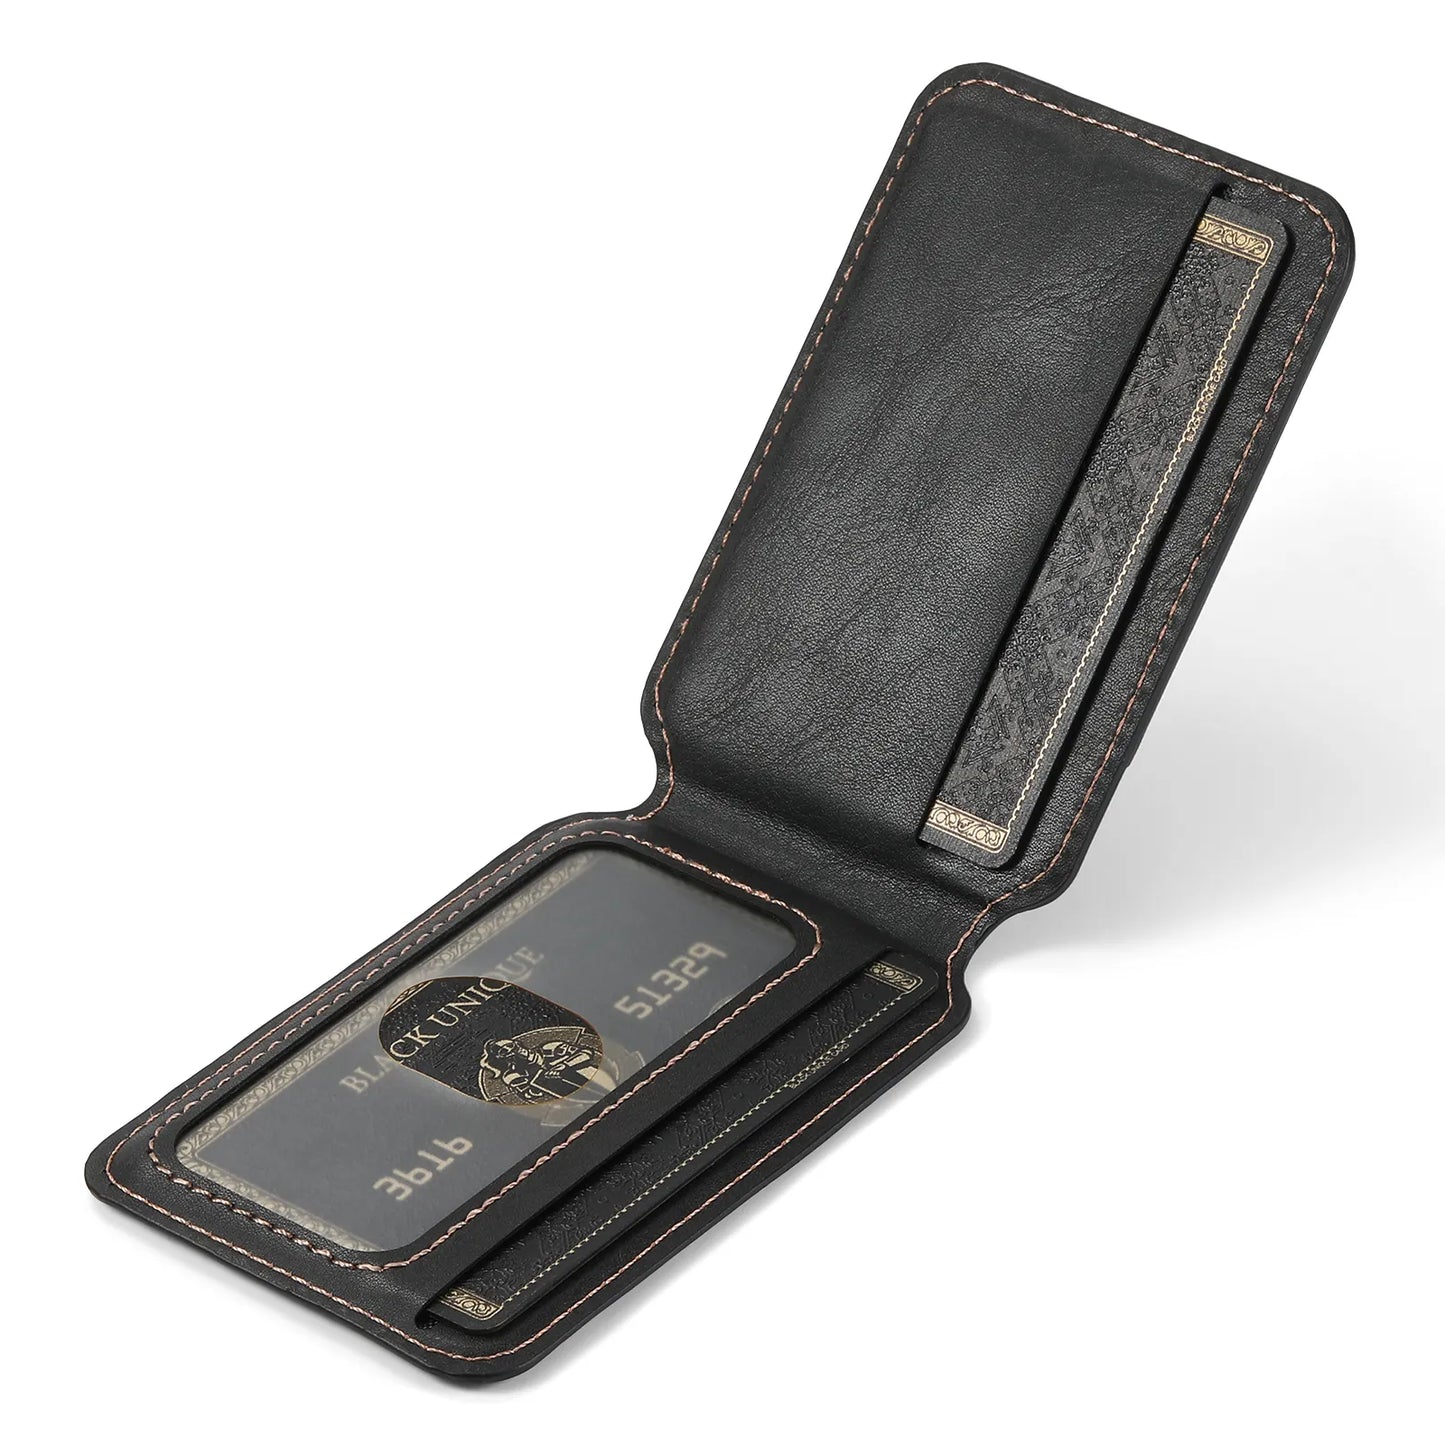 Funda de cuero para iPhone con billetera desmontable 2 en 1 MagSafe 